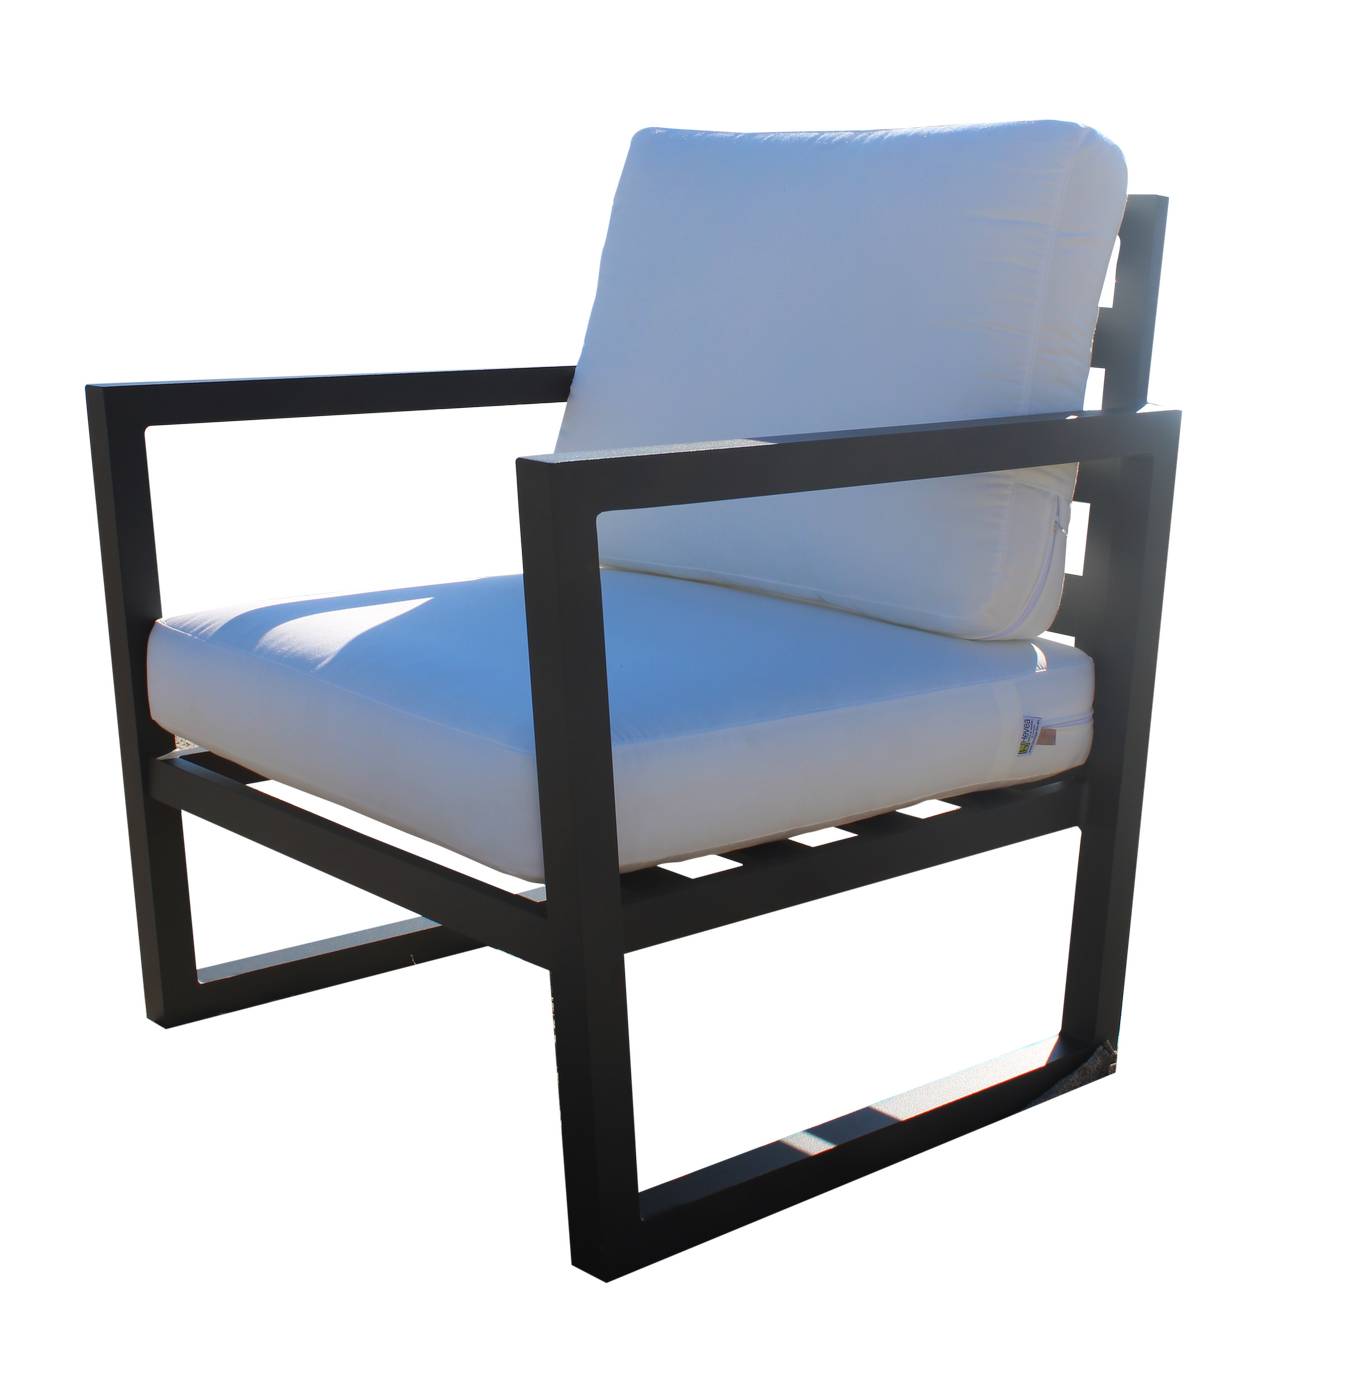 Set Aluminio Alpine-10 - Conjunto de aluminio para exterior: sofá 3 plazas + 2 sillones + mesa de centro + 2 taburetes. Disponible en color blanco o antracita..